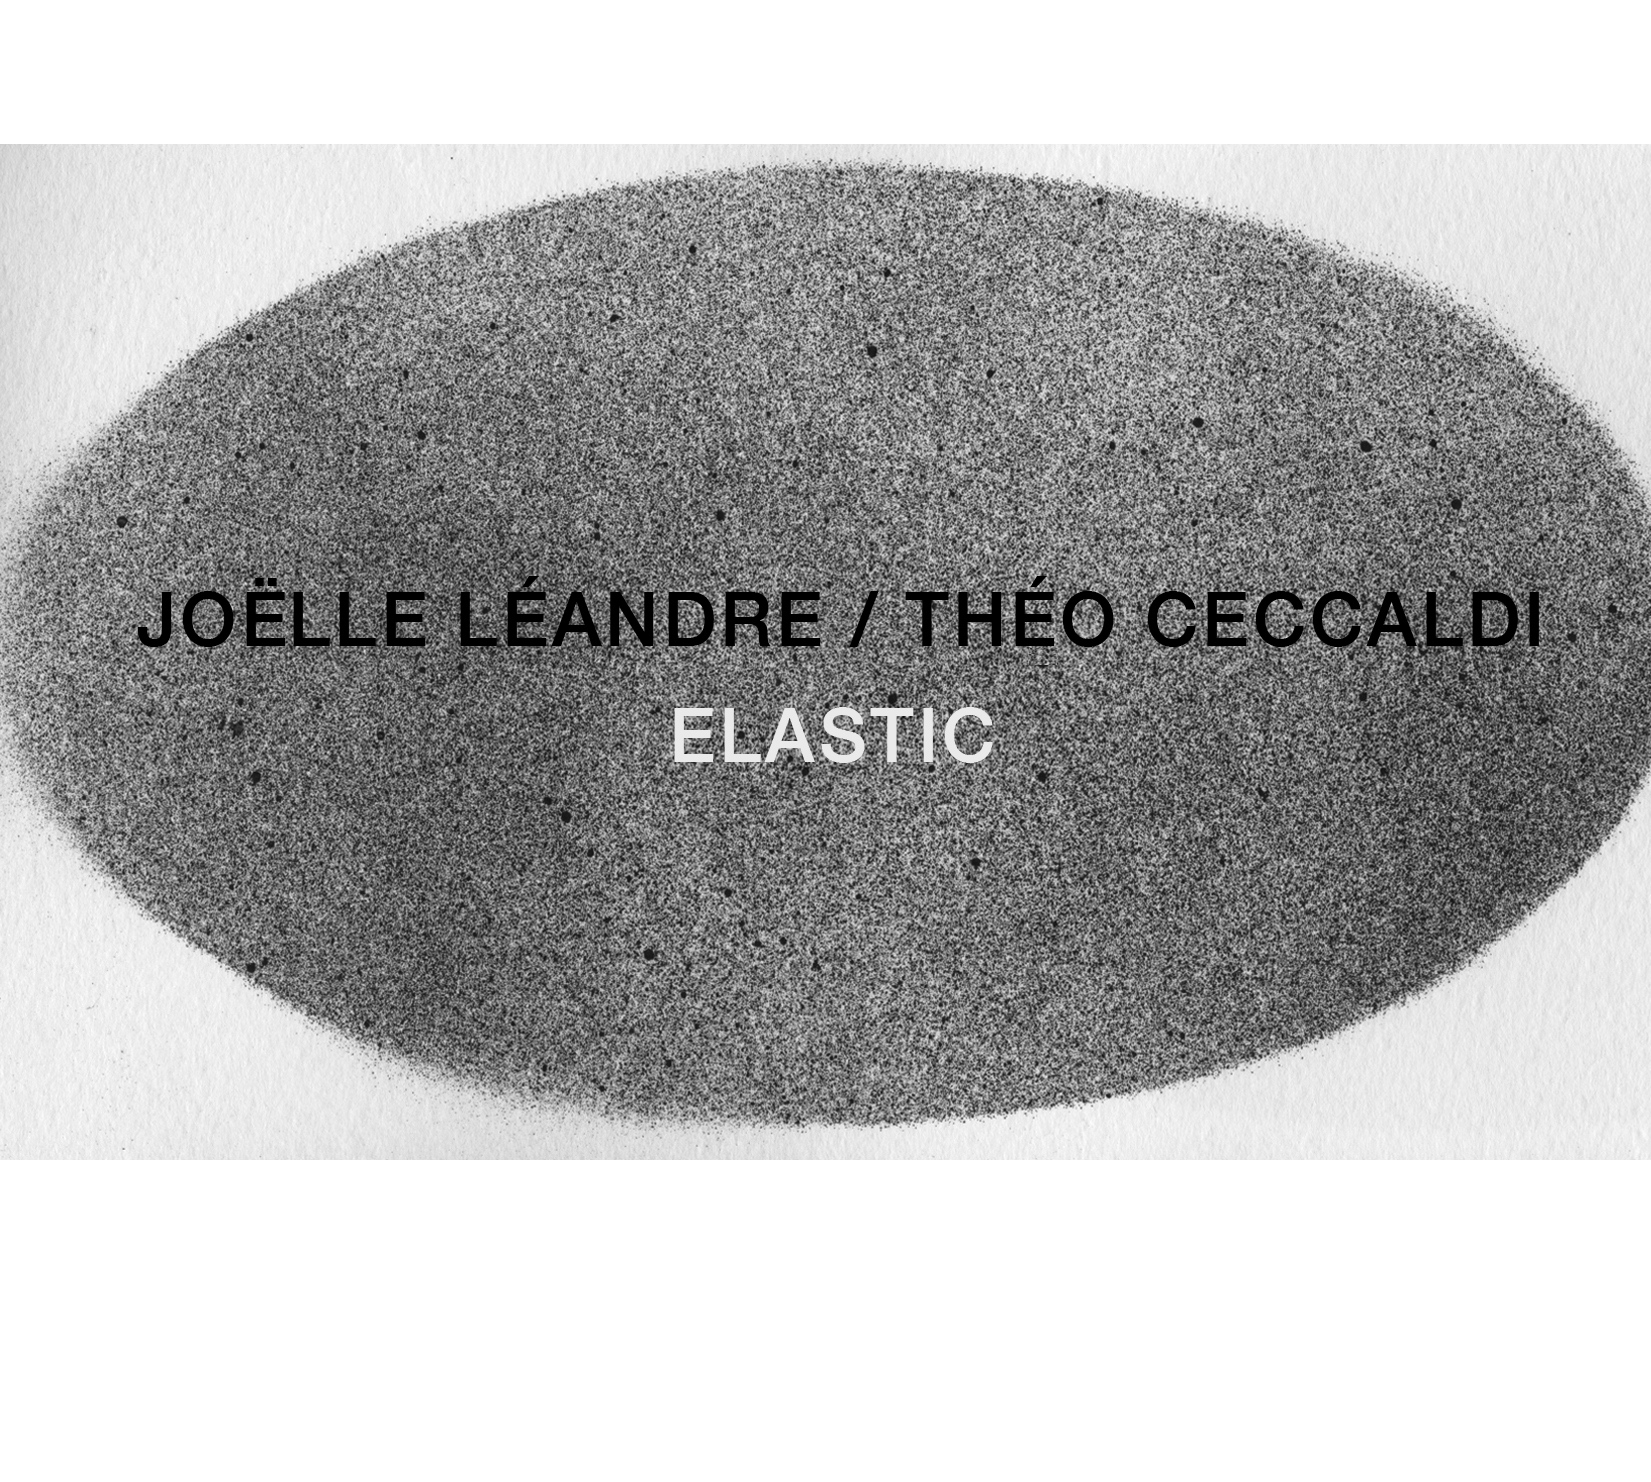 JOËLLE LÉANDRE - Joëlle Léandre / Théo Ceccaldi : Elastic cover 